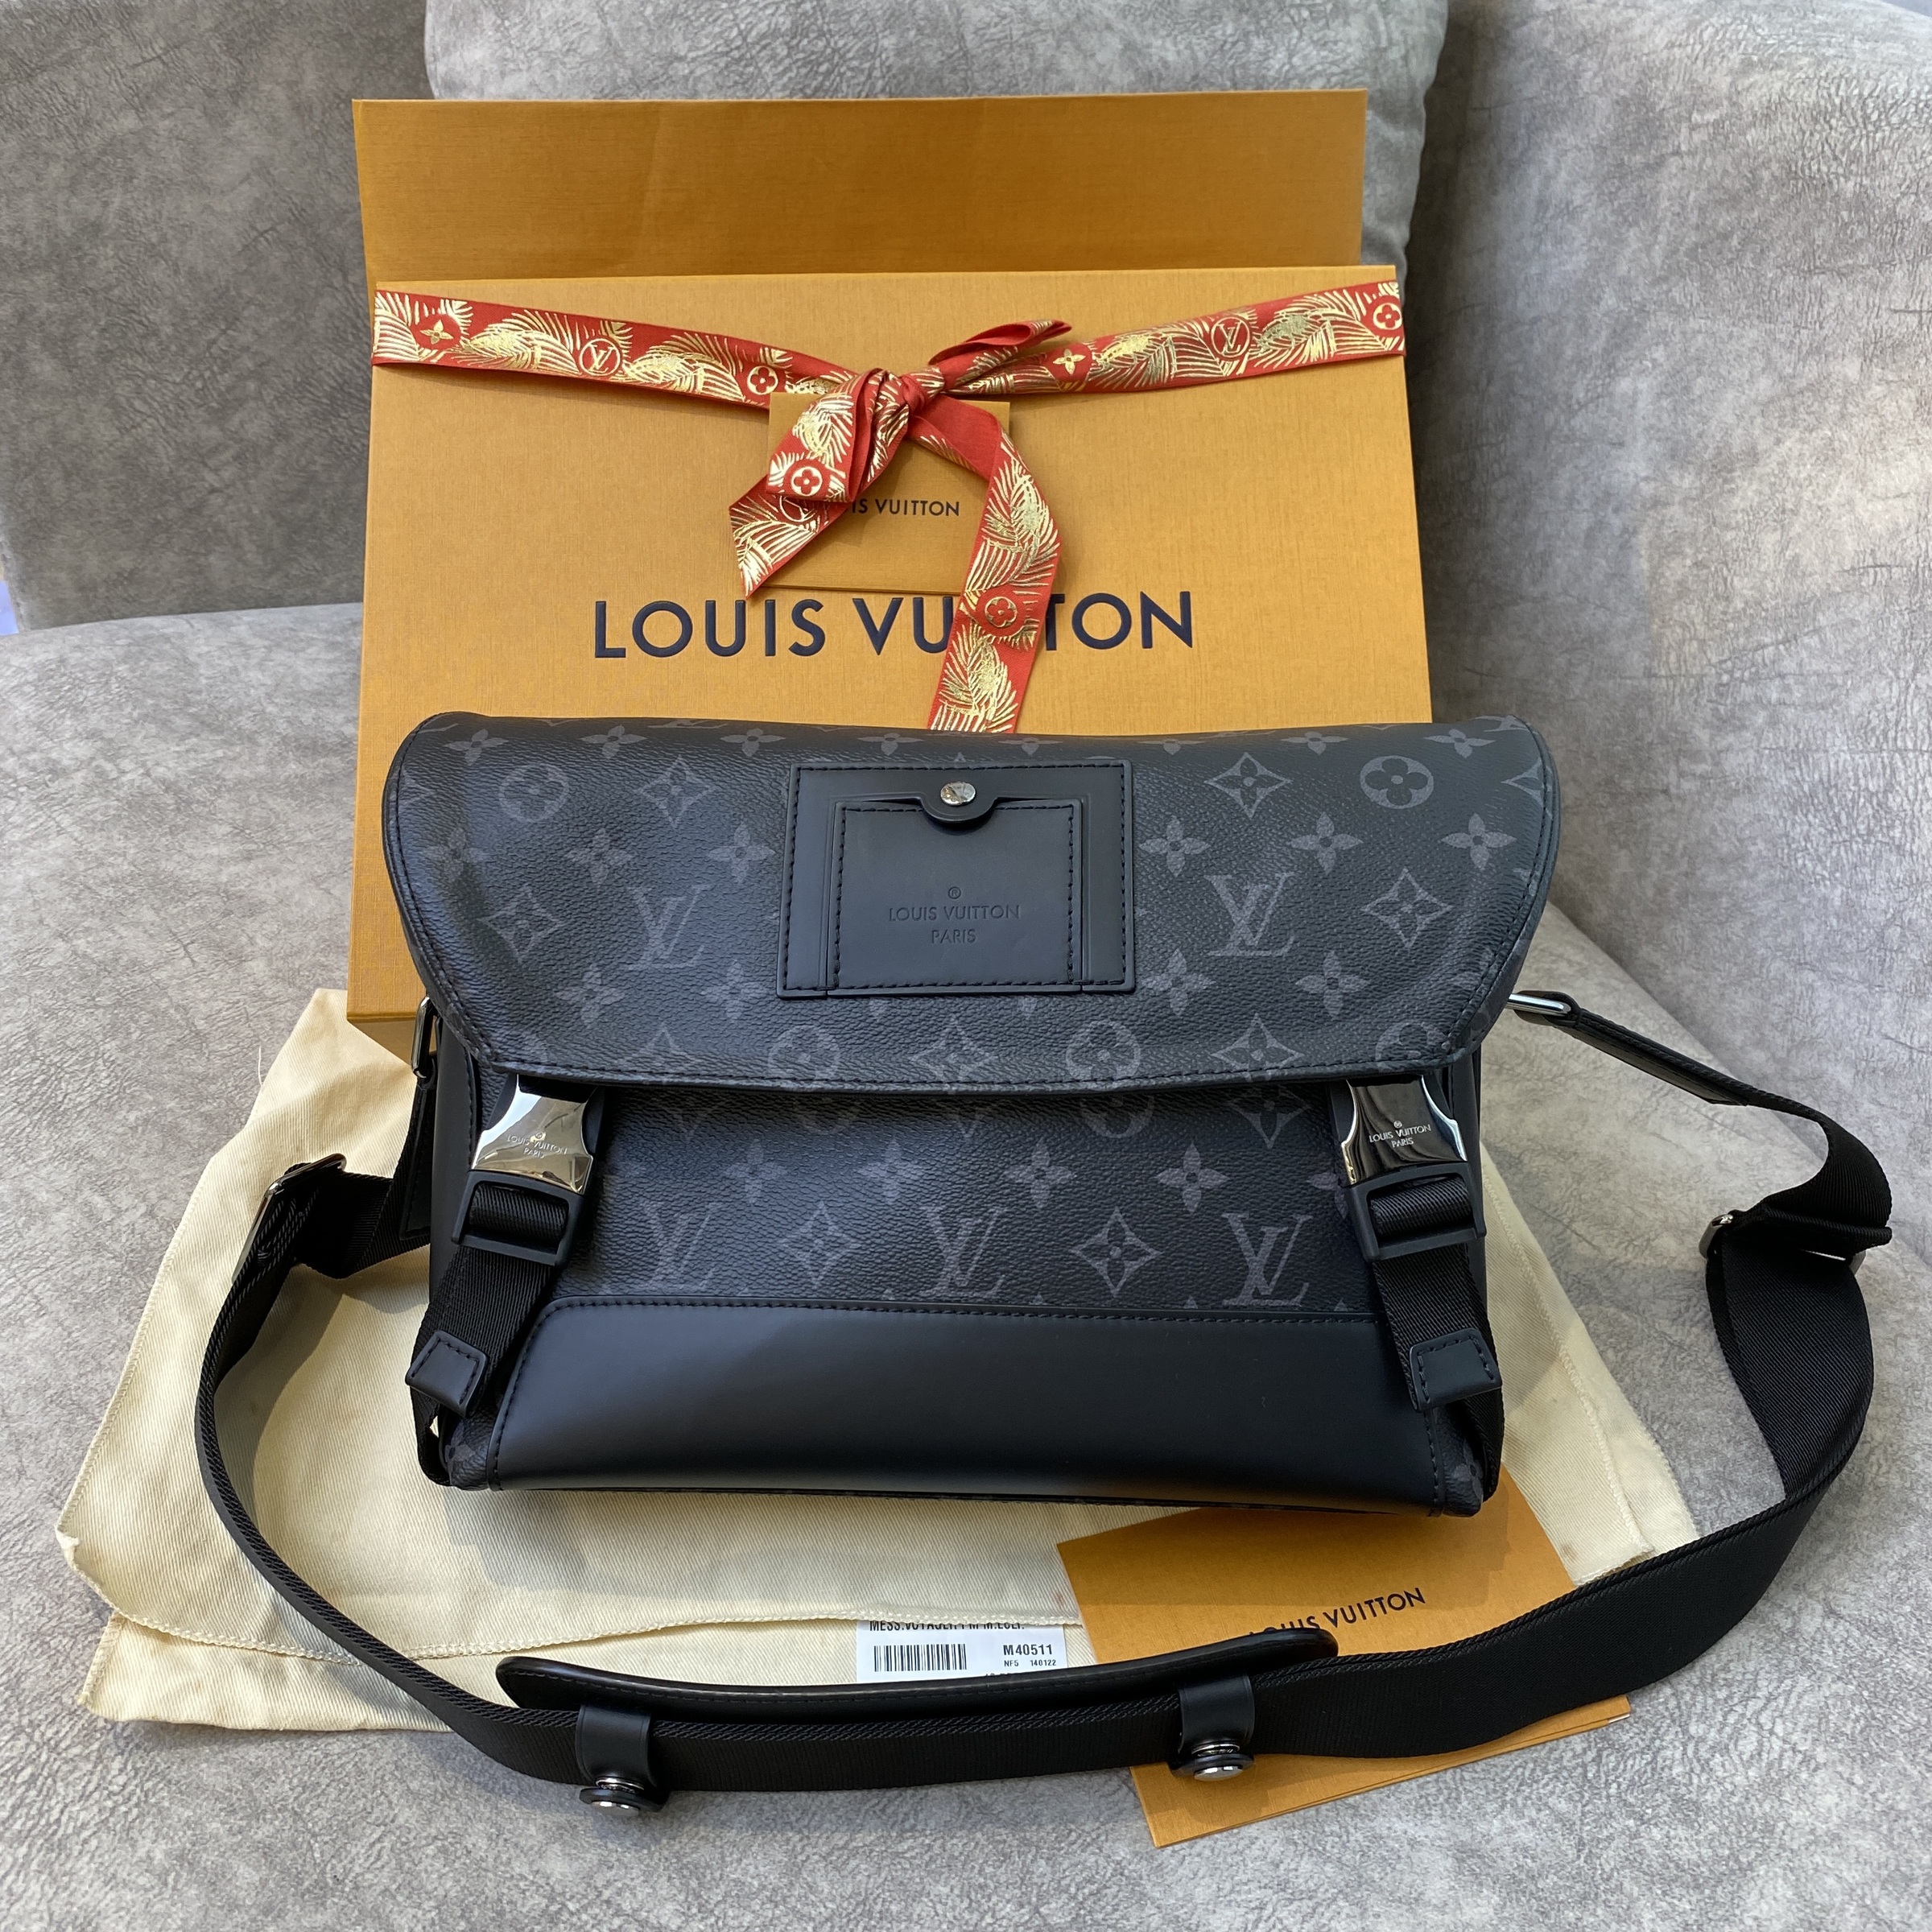 LOUIS VUITTON Messenger voyage PM shoulder bag Crossbody M40511